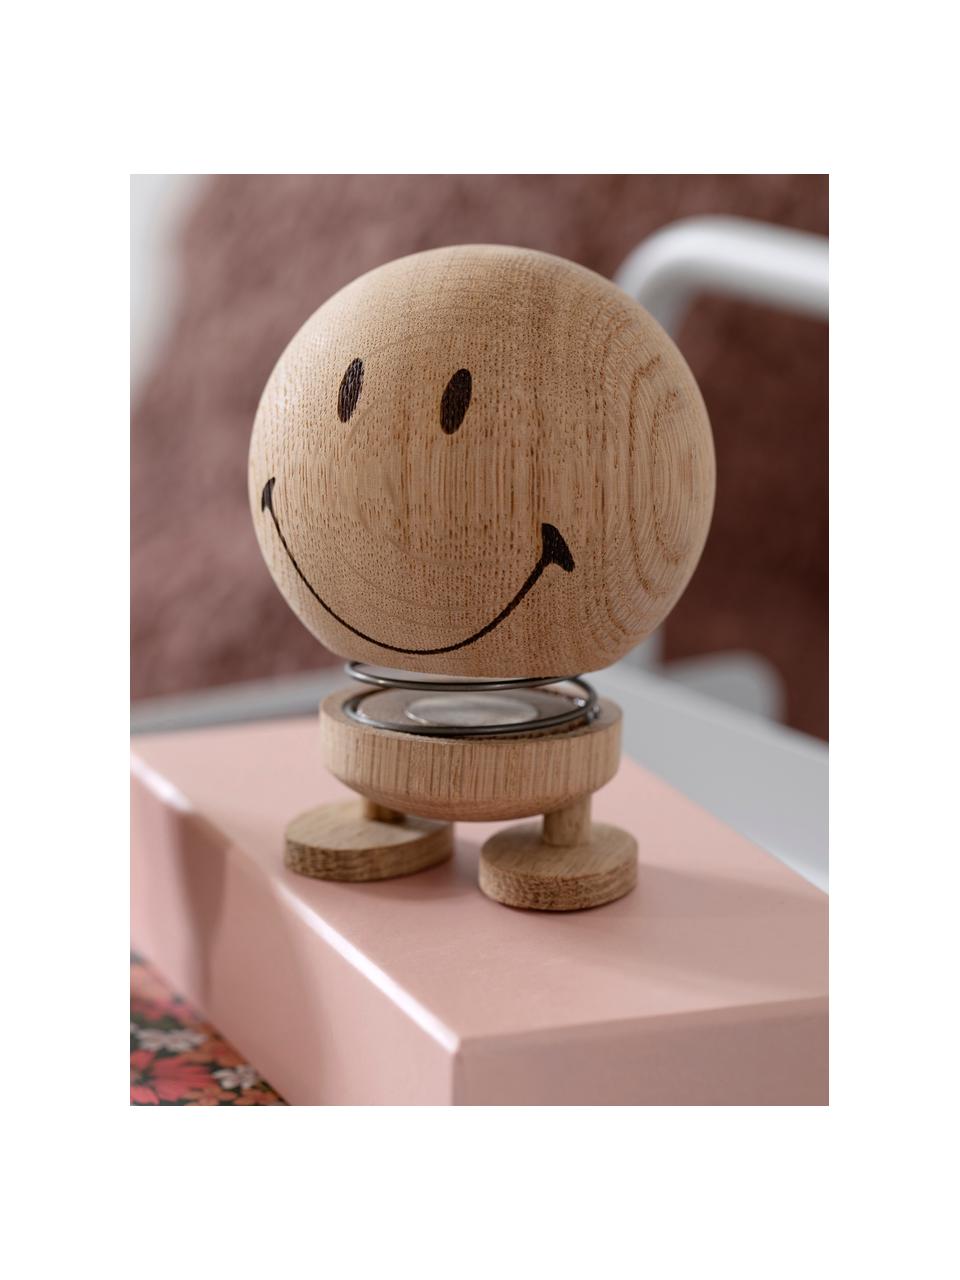 Deko-Objekt Hoptimist Smiley aus Eichenholz, Eichenholz, Lächelnd, Ø 8 x H 10 cm